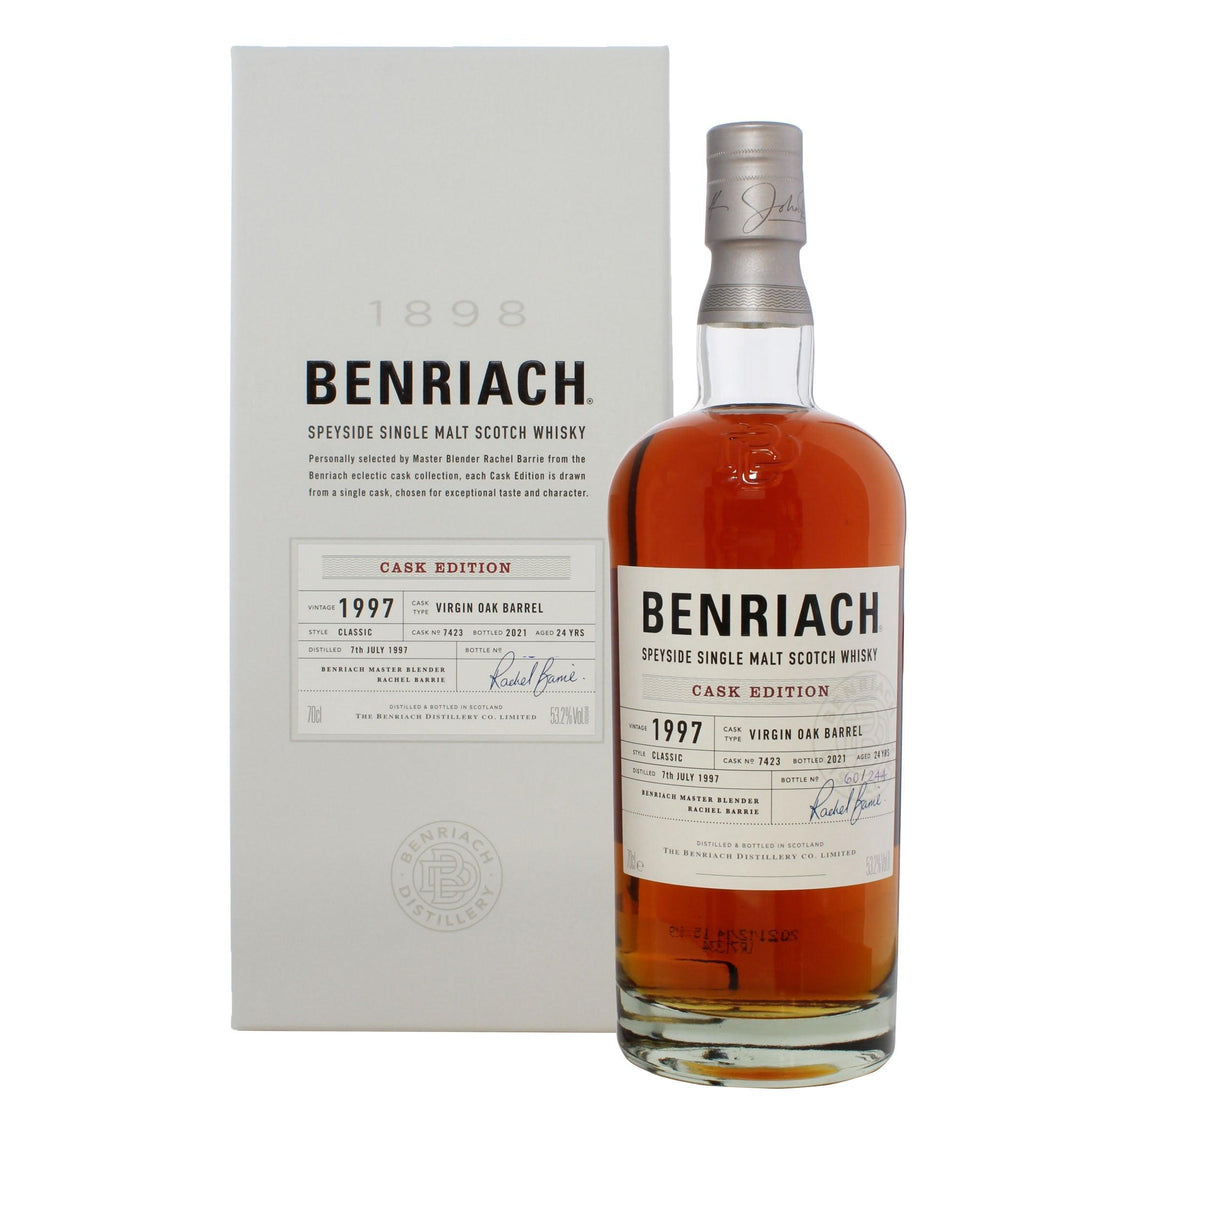 Benriach 1997 Cask Edition Speyside Single Malt Scotch Whisky